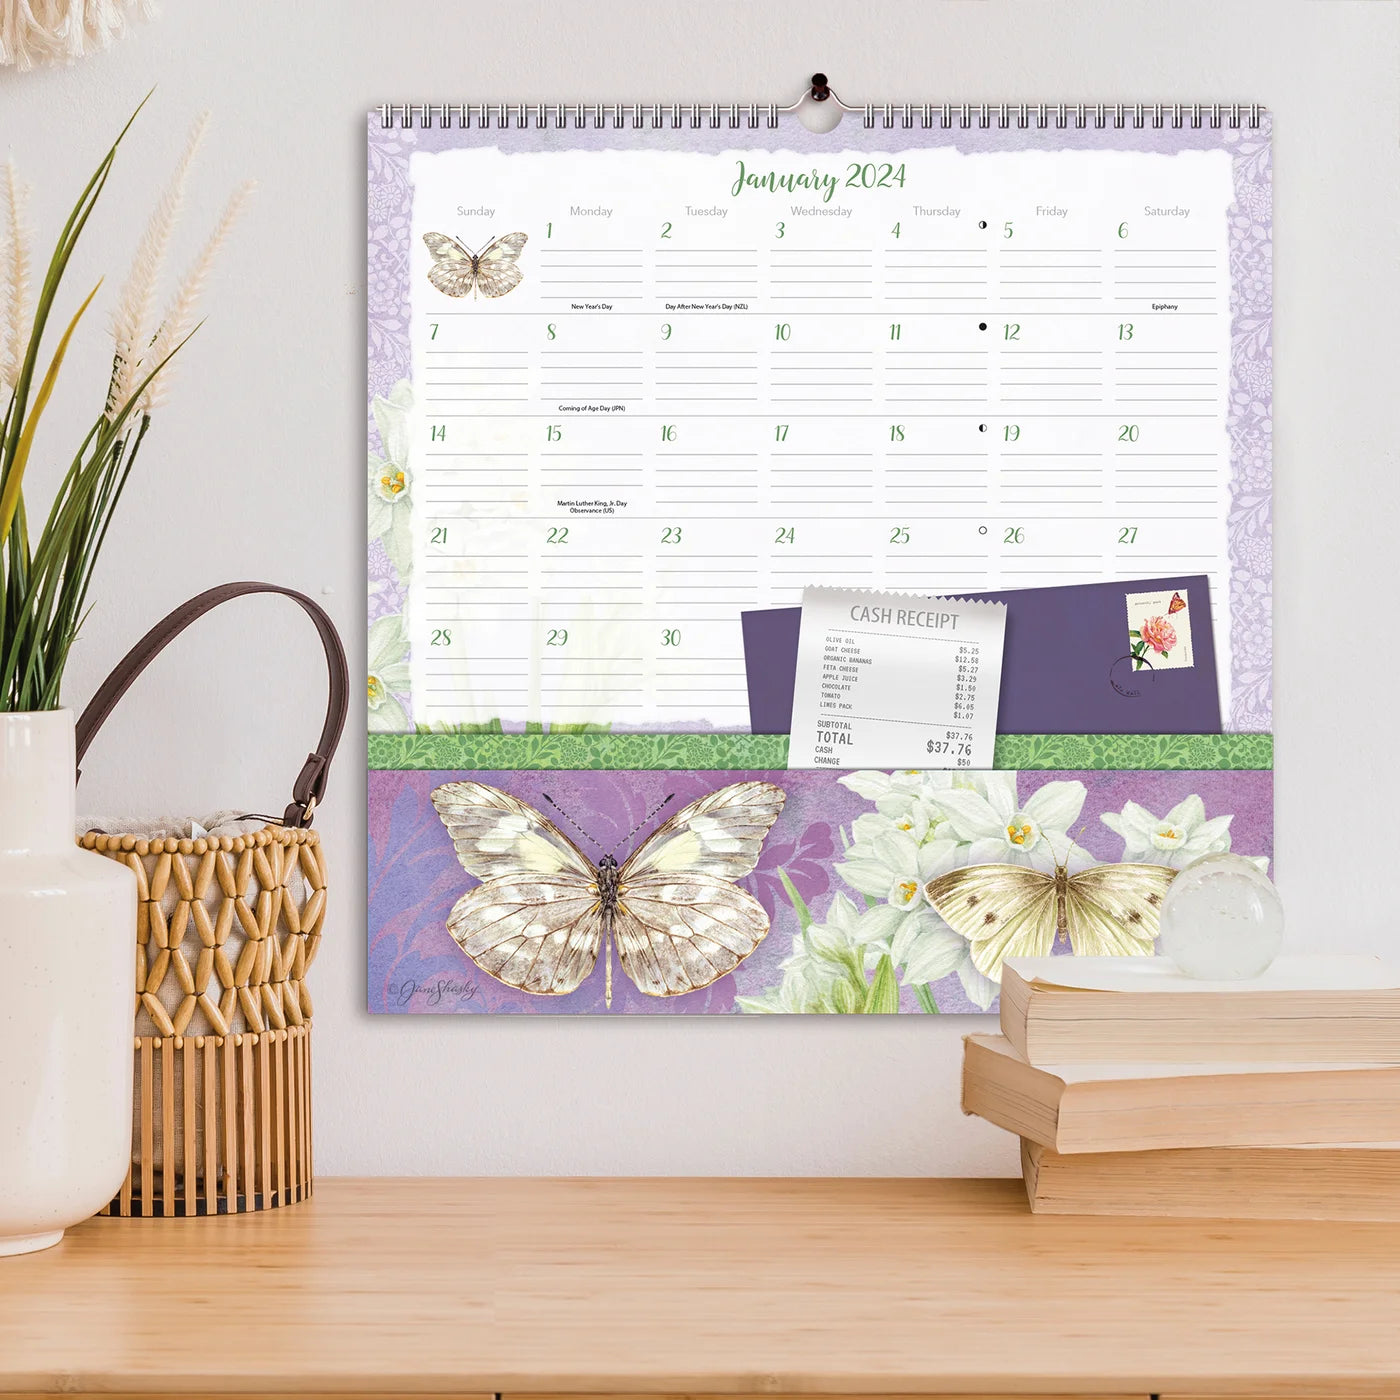 2024 Butterflies - Note Nook Square Wall Calendar